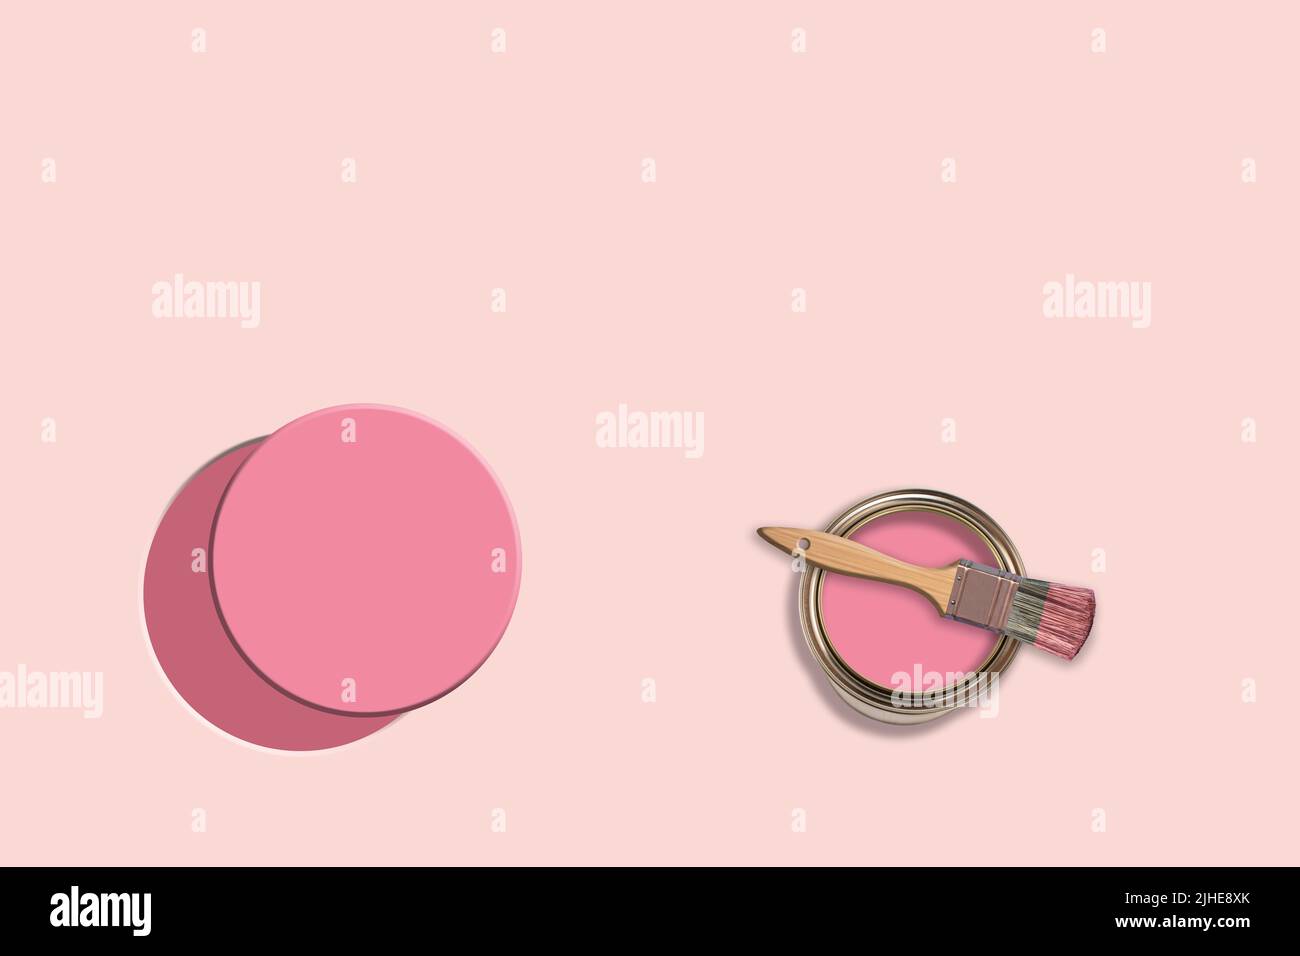 Kreatives Konzept Bild der Dekoration Umbau Malerei Farbe Farbtopf kann Zinn Pinsel auf einem bunten rosa Hintergrund gemalt Kreis Stockfoto